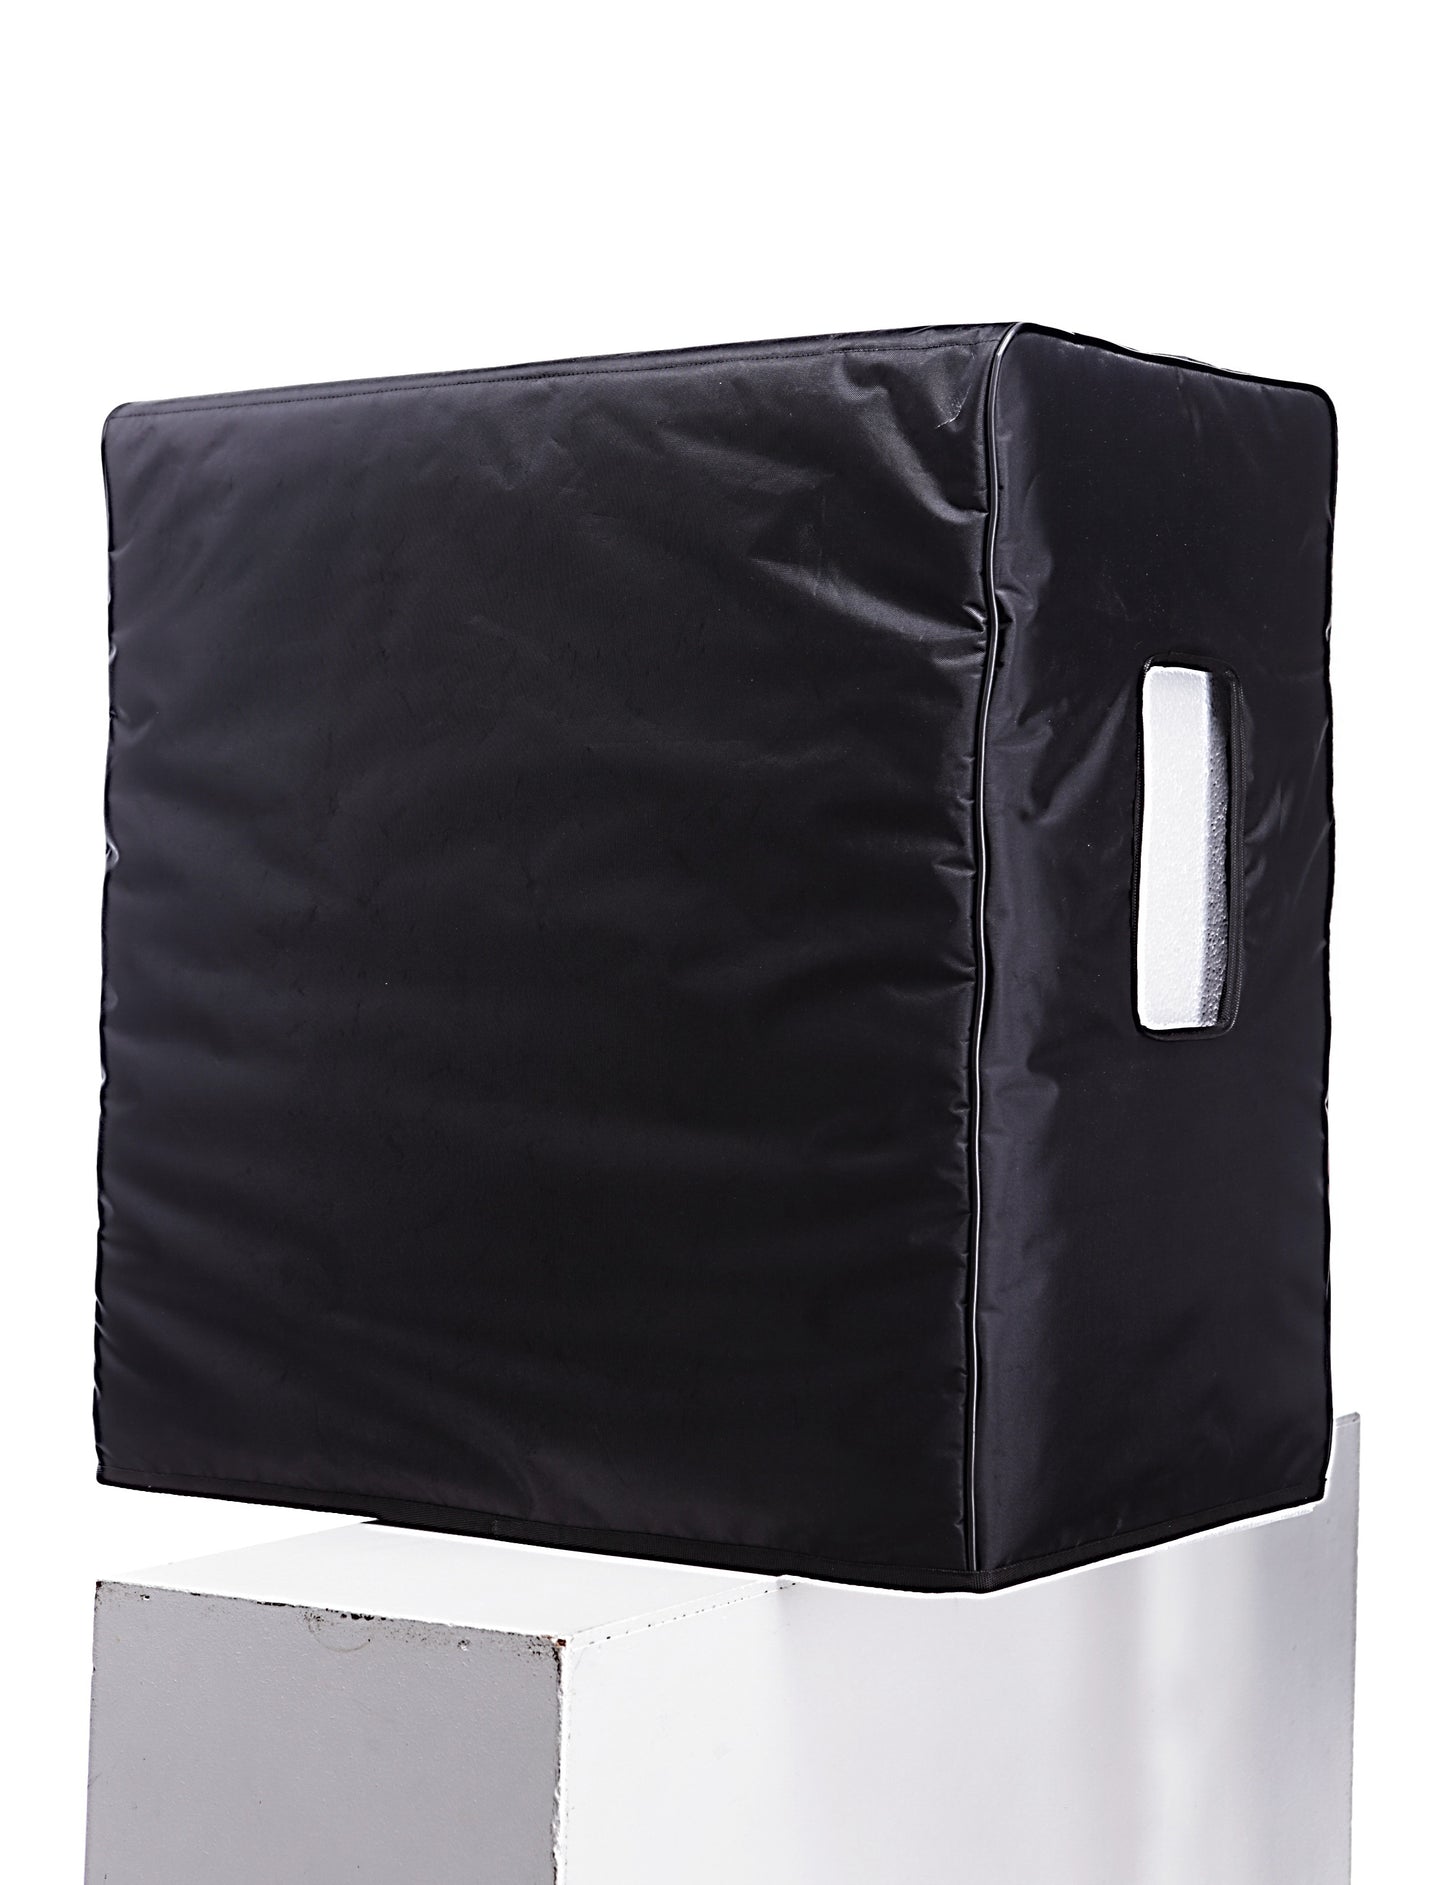 Custom padded cover for FENDER Tone master 4x12" cabinet